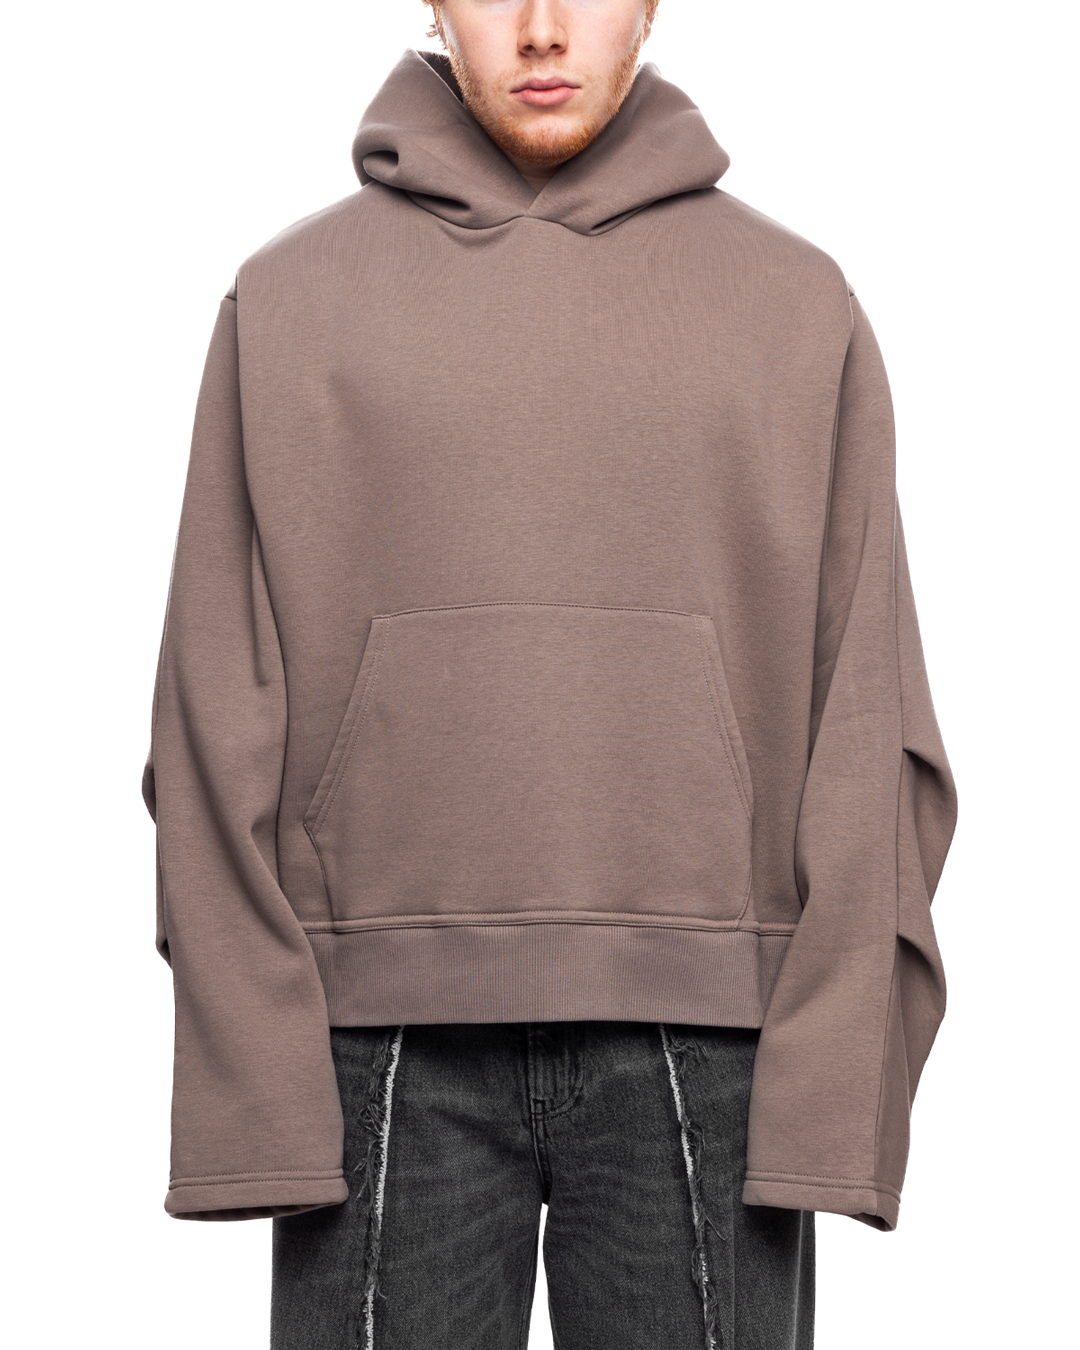 Long-Sleeve Hooded Sweatshirt Beige